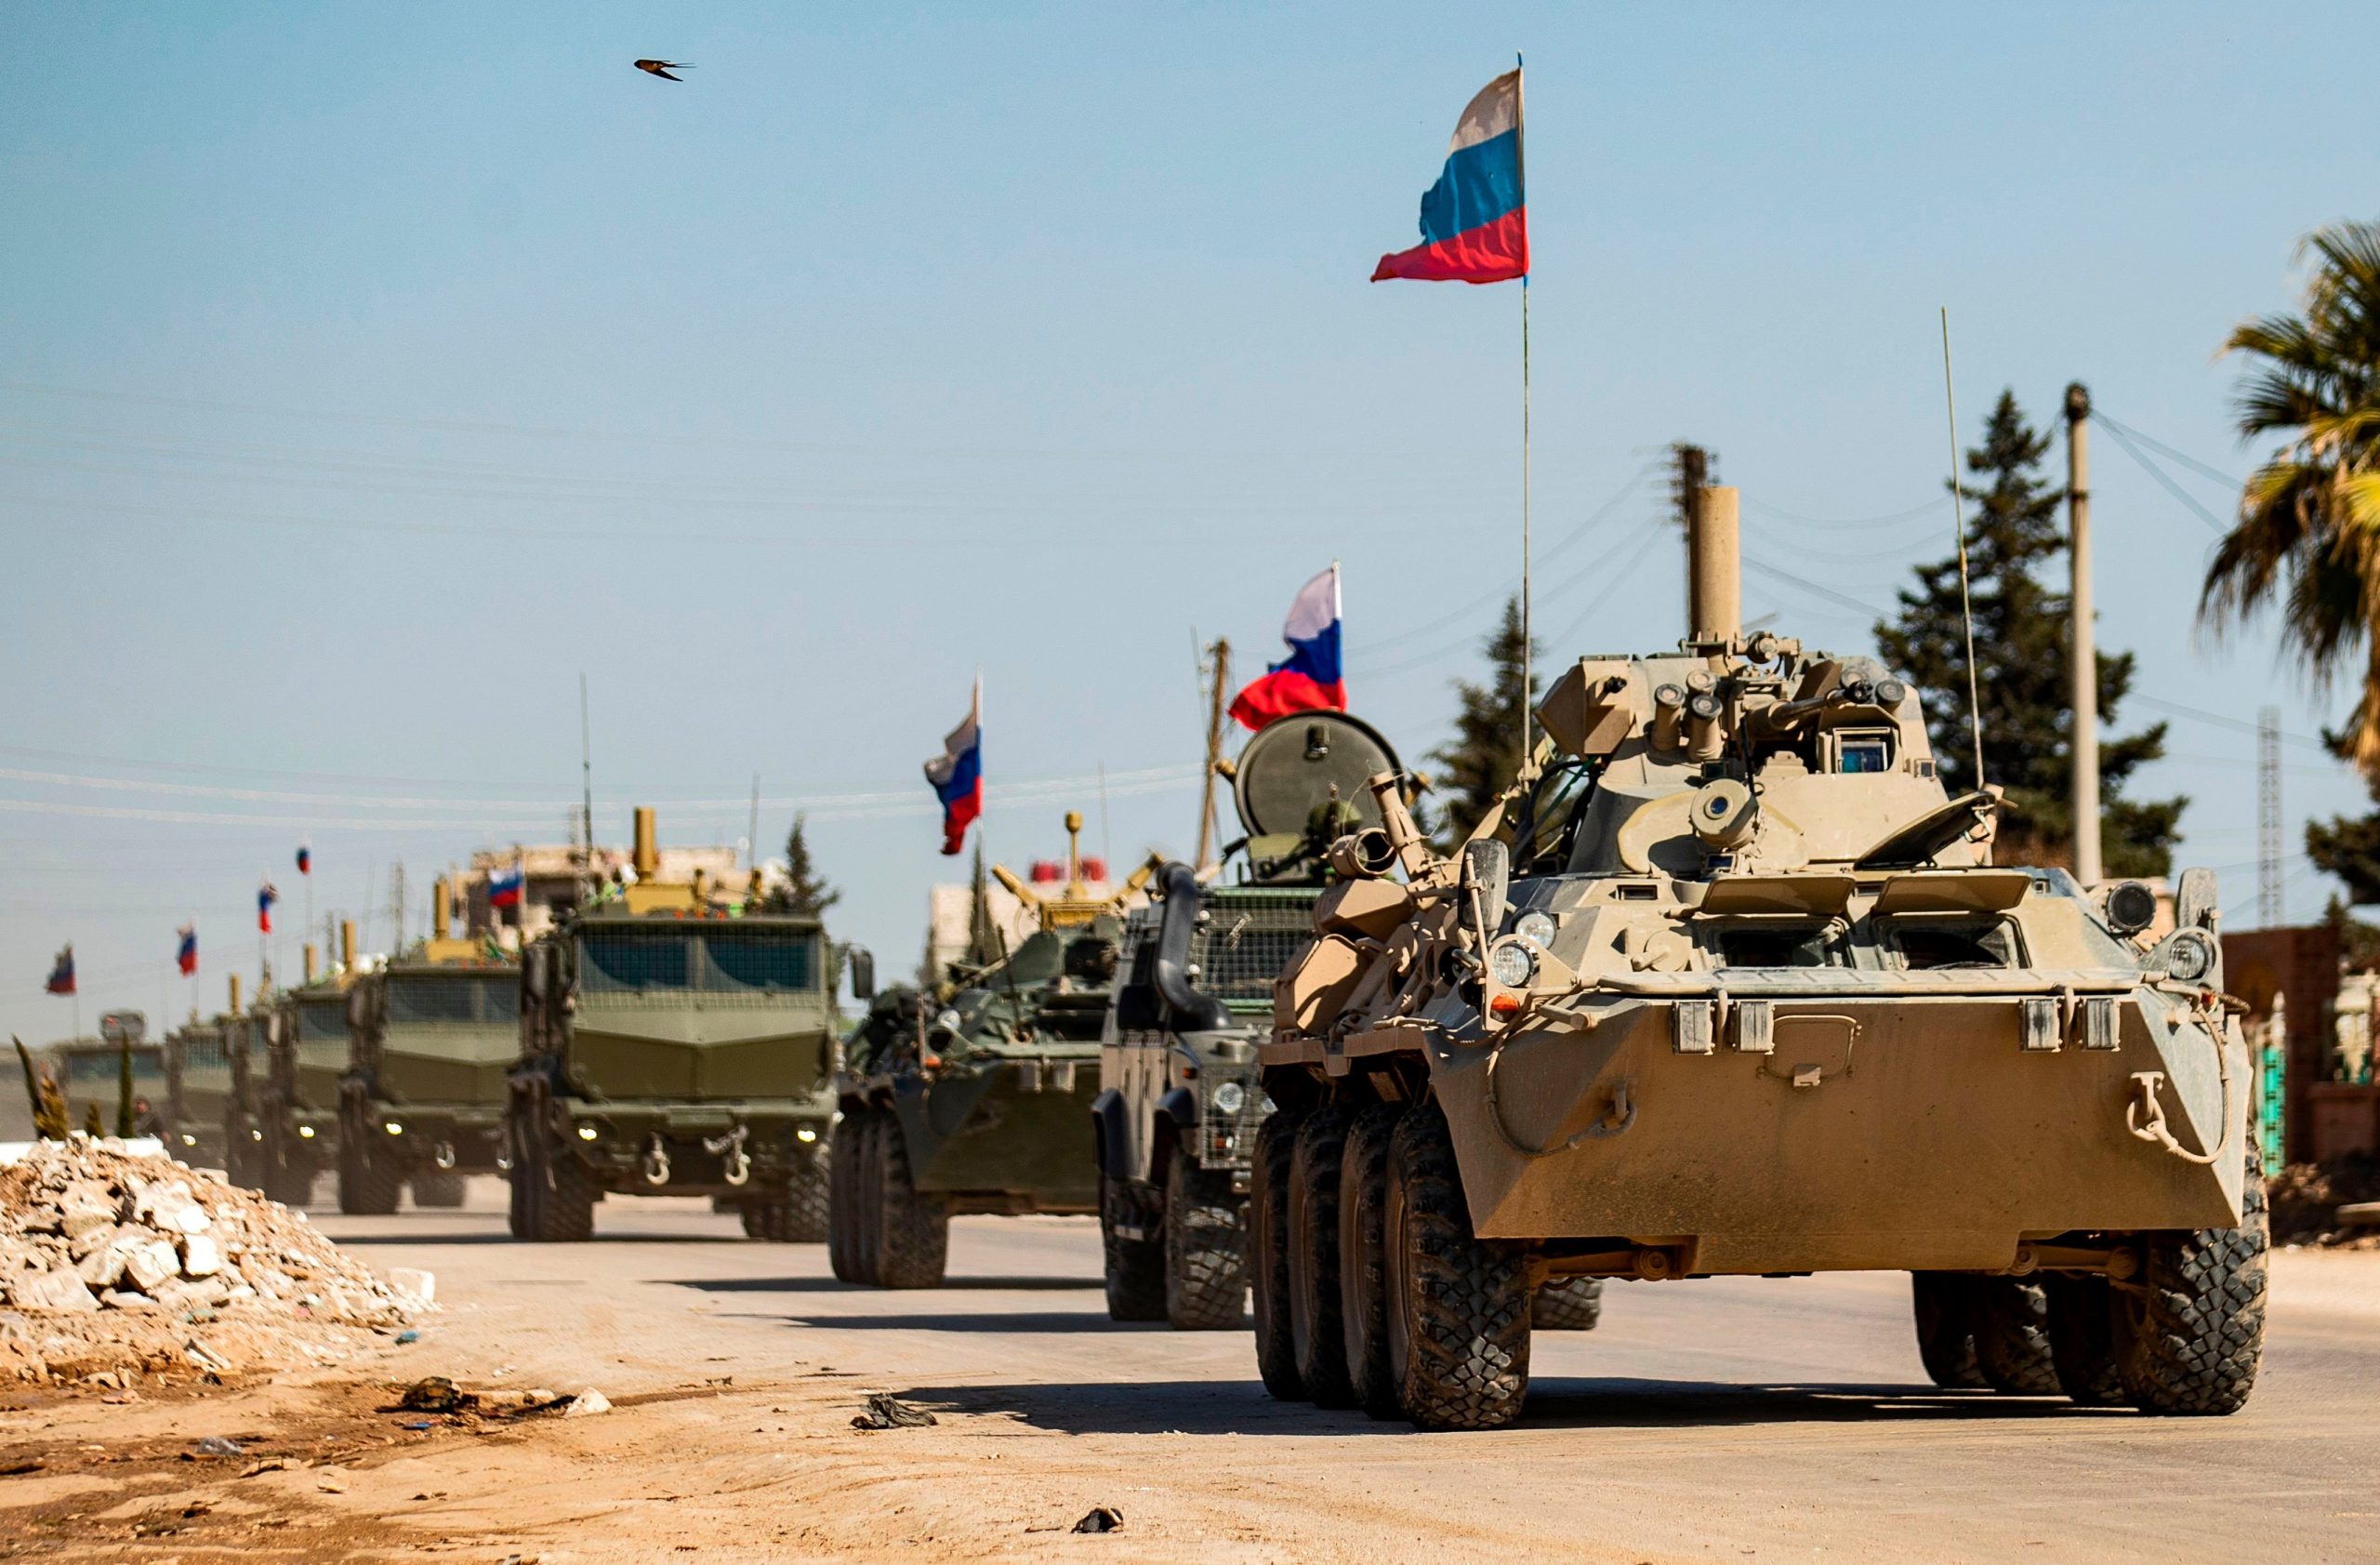 Νέα ένταση στη Συρία: Ρώσοι στρατιώτες περικύκλωσαν αμερικανική περίπολο! (βίντεο)